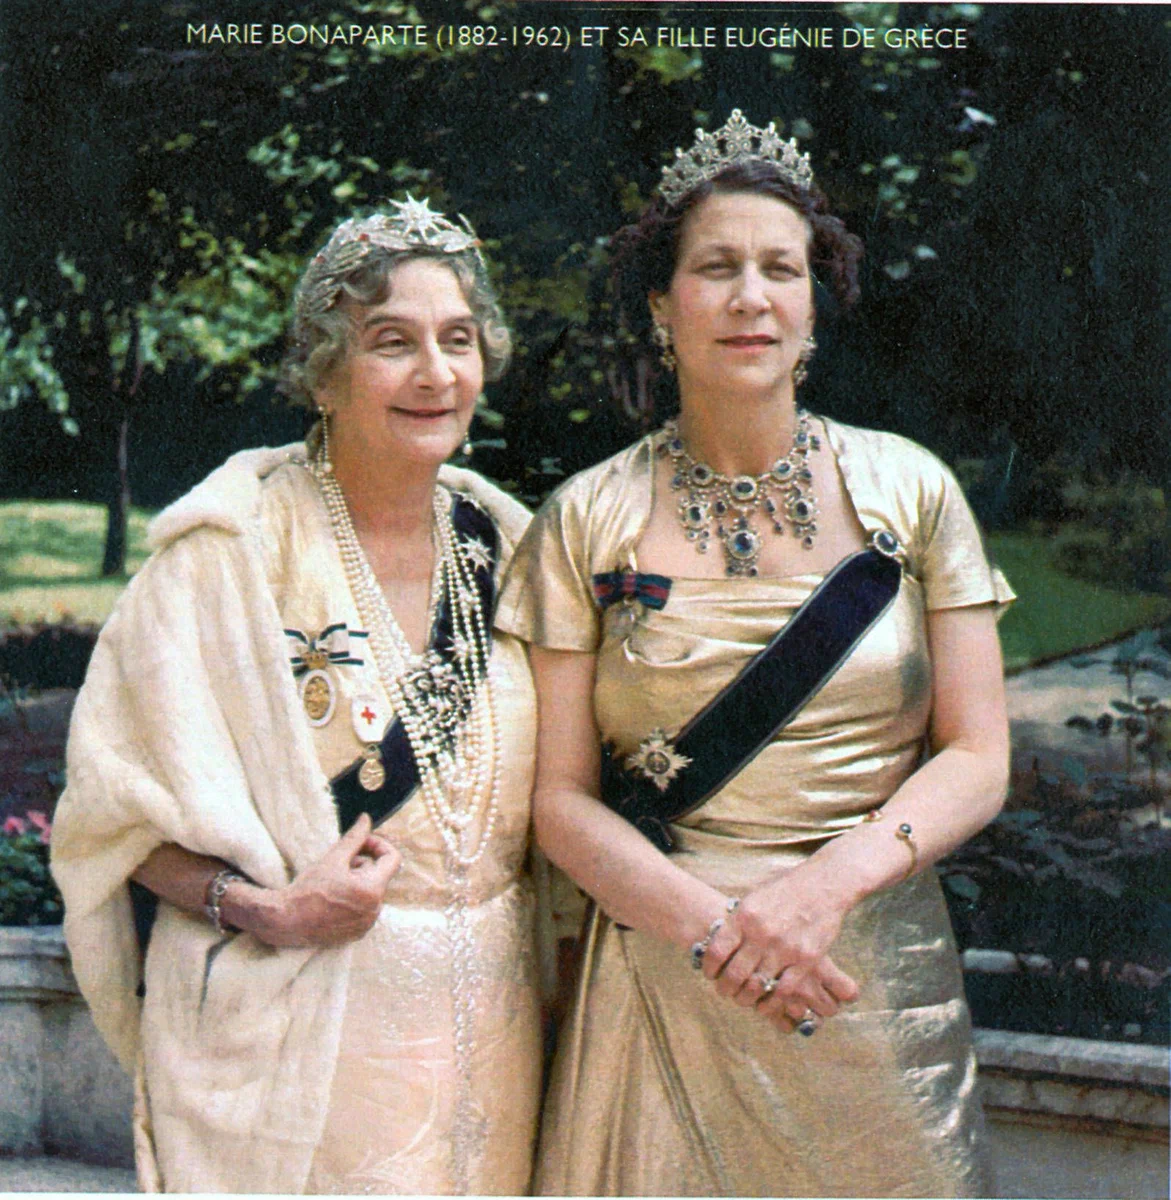 Принцесса Мария Бонапарт и ее дочь принцесса Греции Евгения. 1953